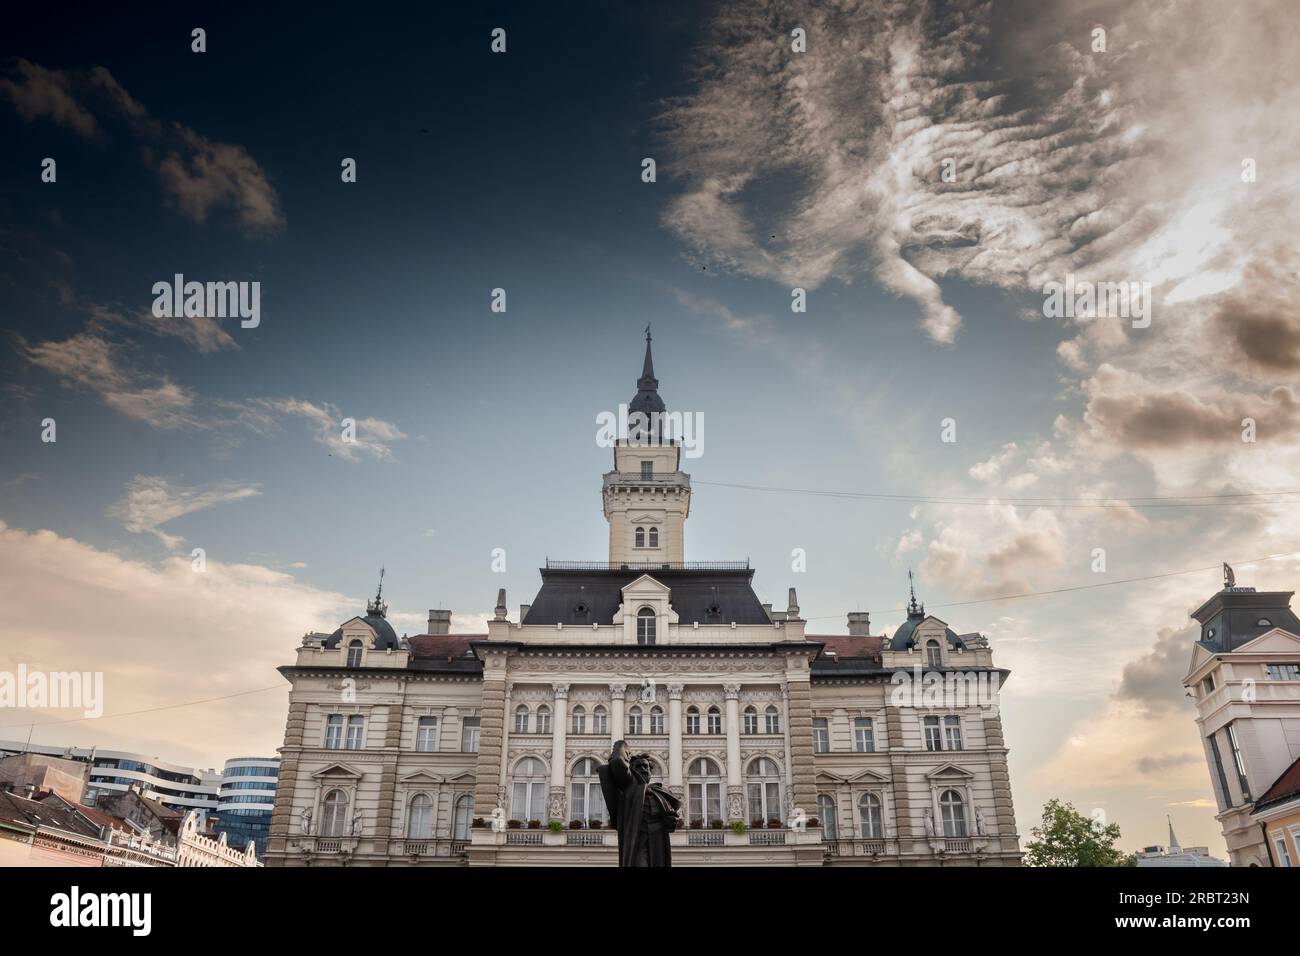 Bild des zentralen Platzes von novi Sad, Serbien, genannt Trg Slobode, mit dem Rathaus im Hintergrund und Passanten und der svetozar mi Stockfoto